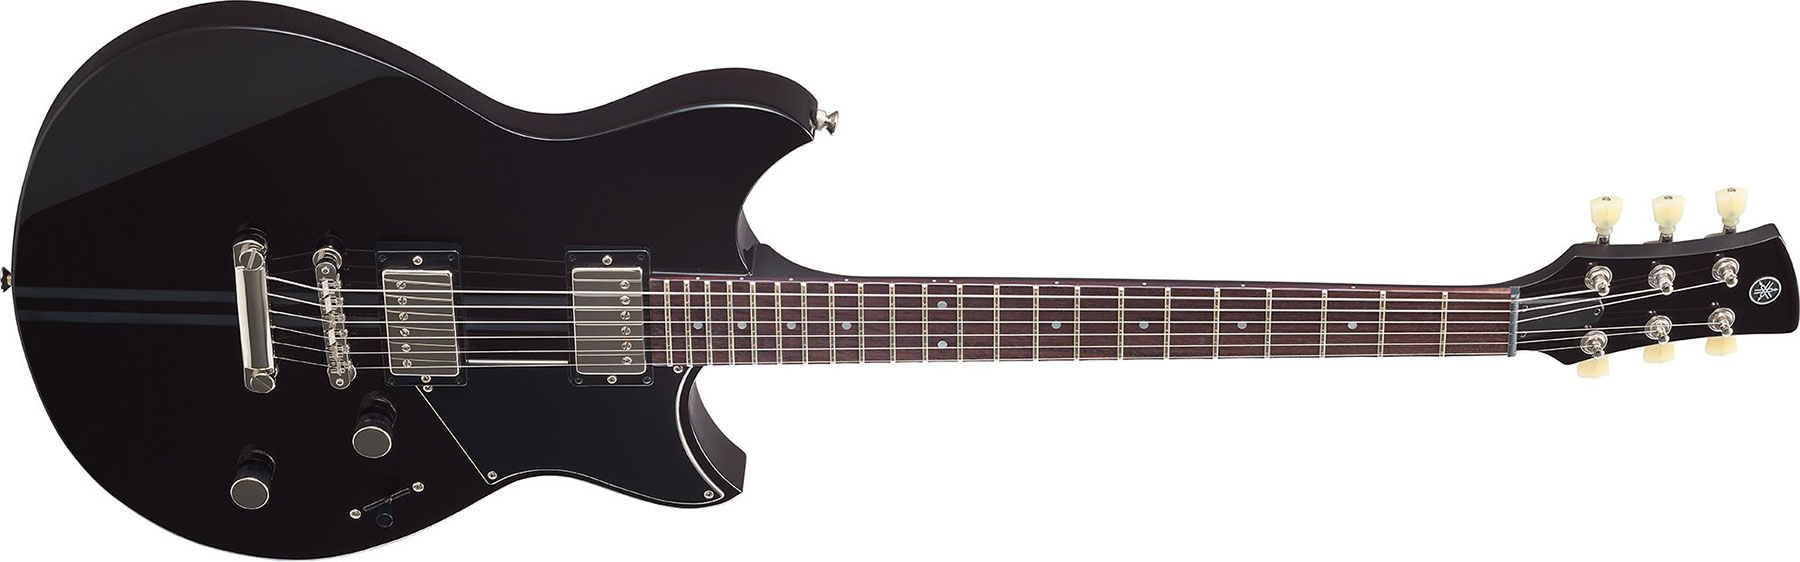 Yamaha Rse20 Revstar Element Hh Ht Rw - Black - Guitarra eléctrica de doble corte. - Variation 2